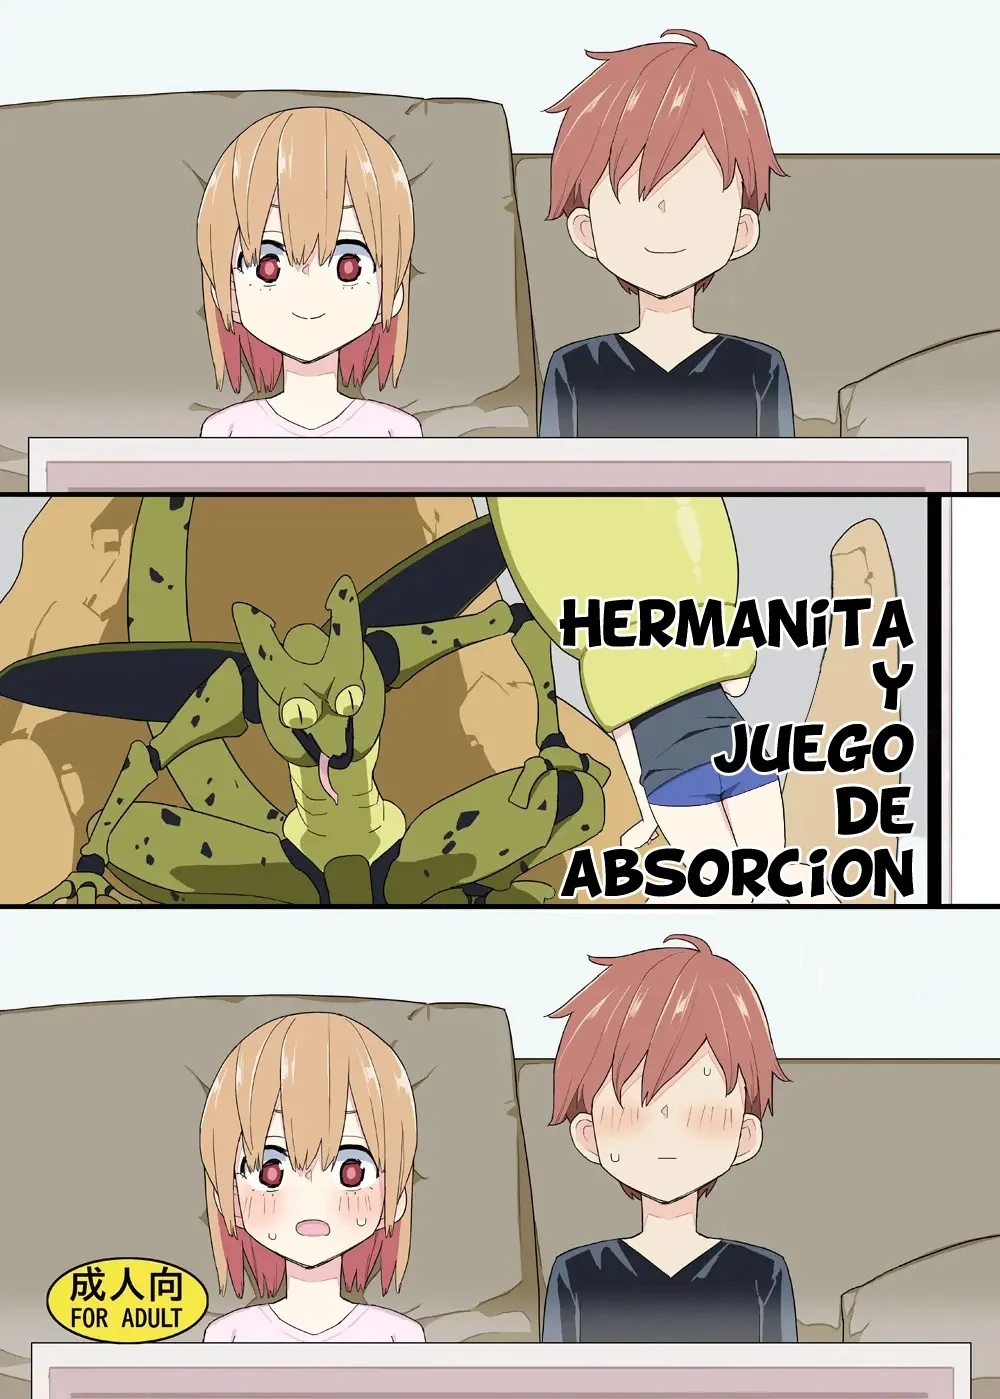 HERMANITA Y JUEGO DE ABSORCION - 0